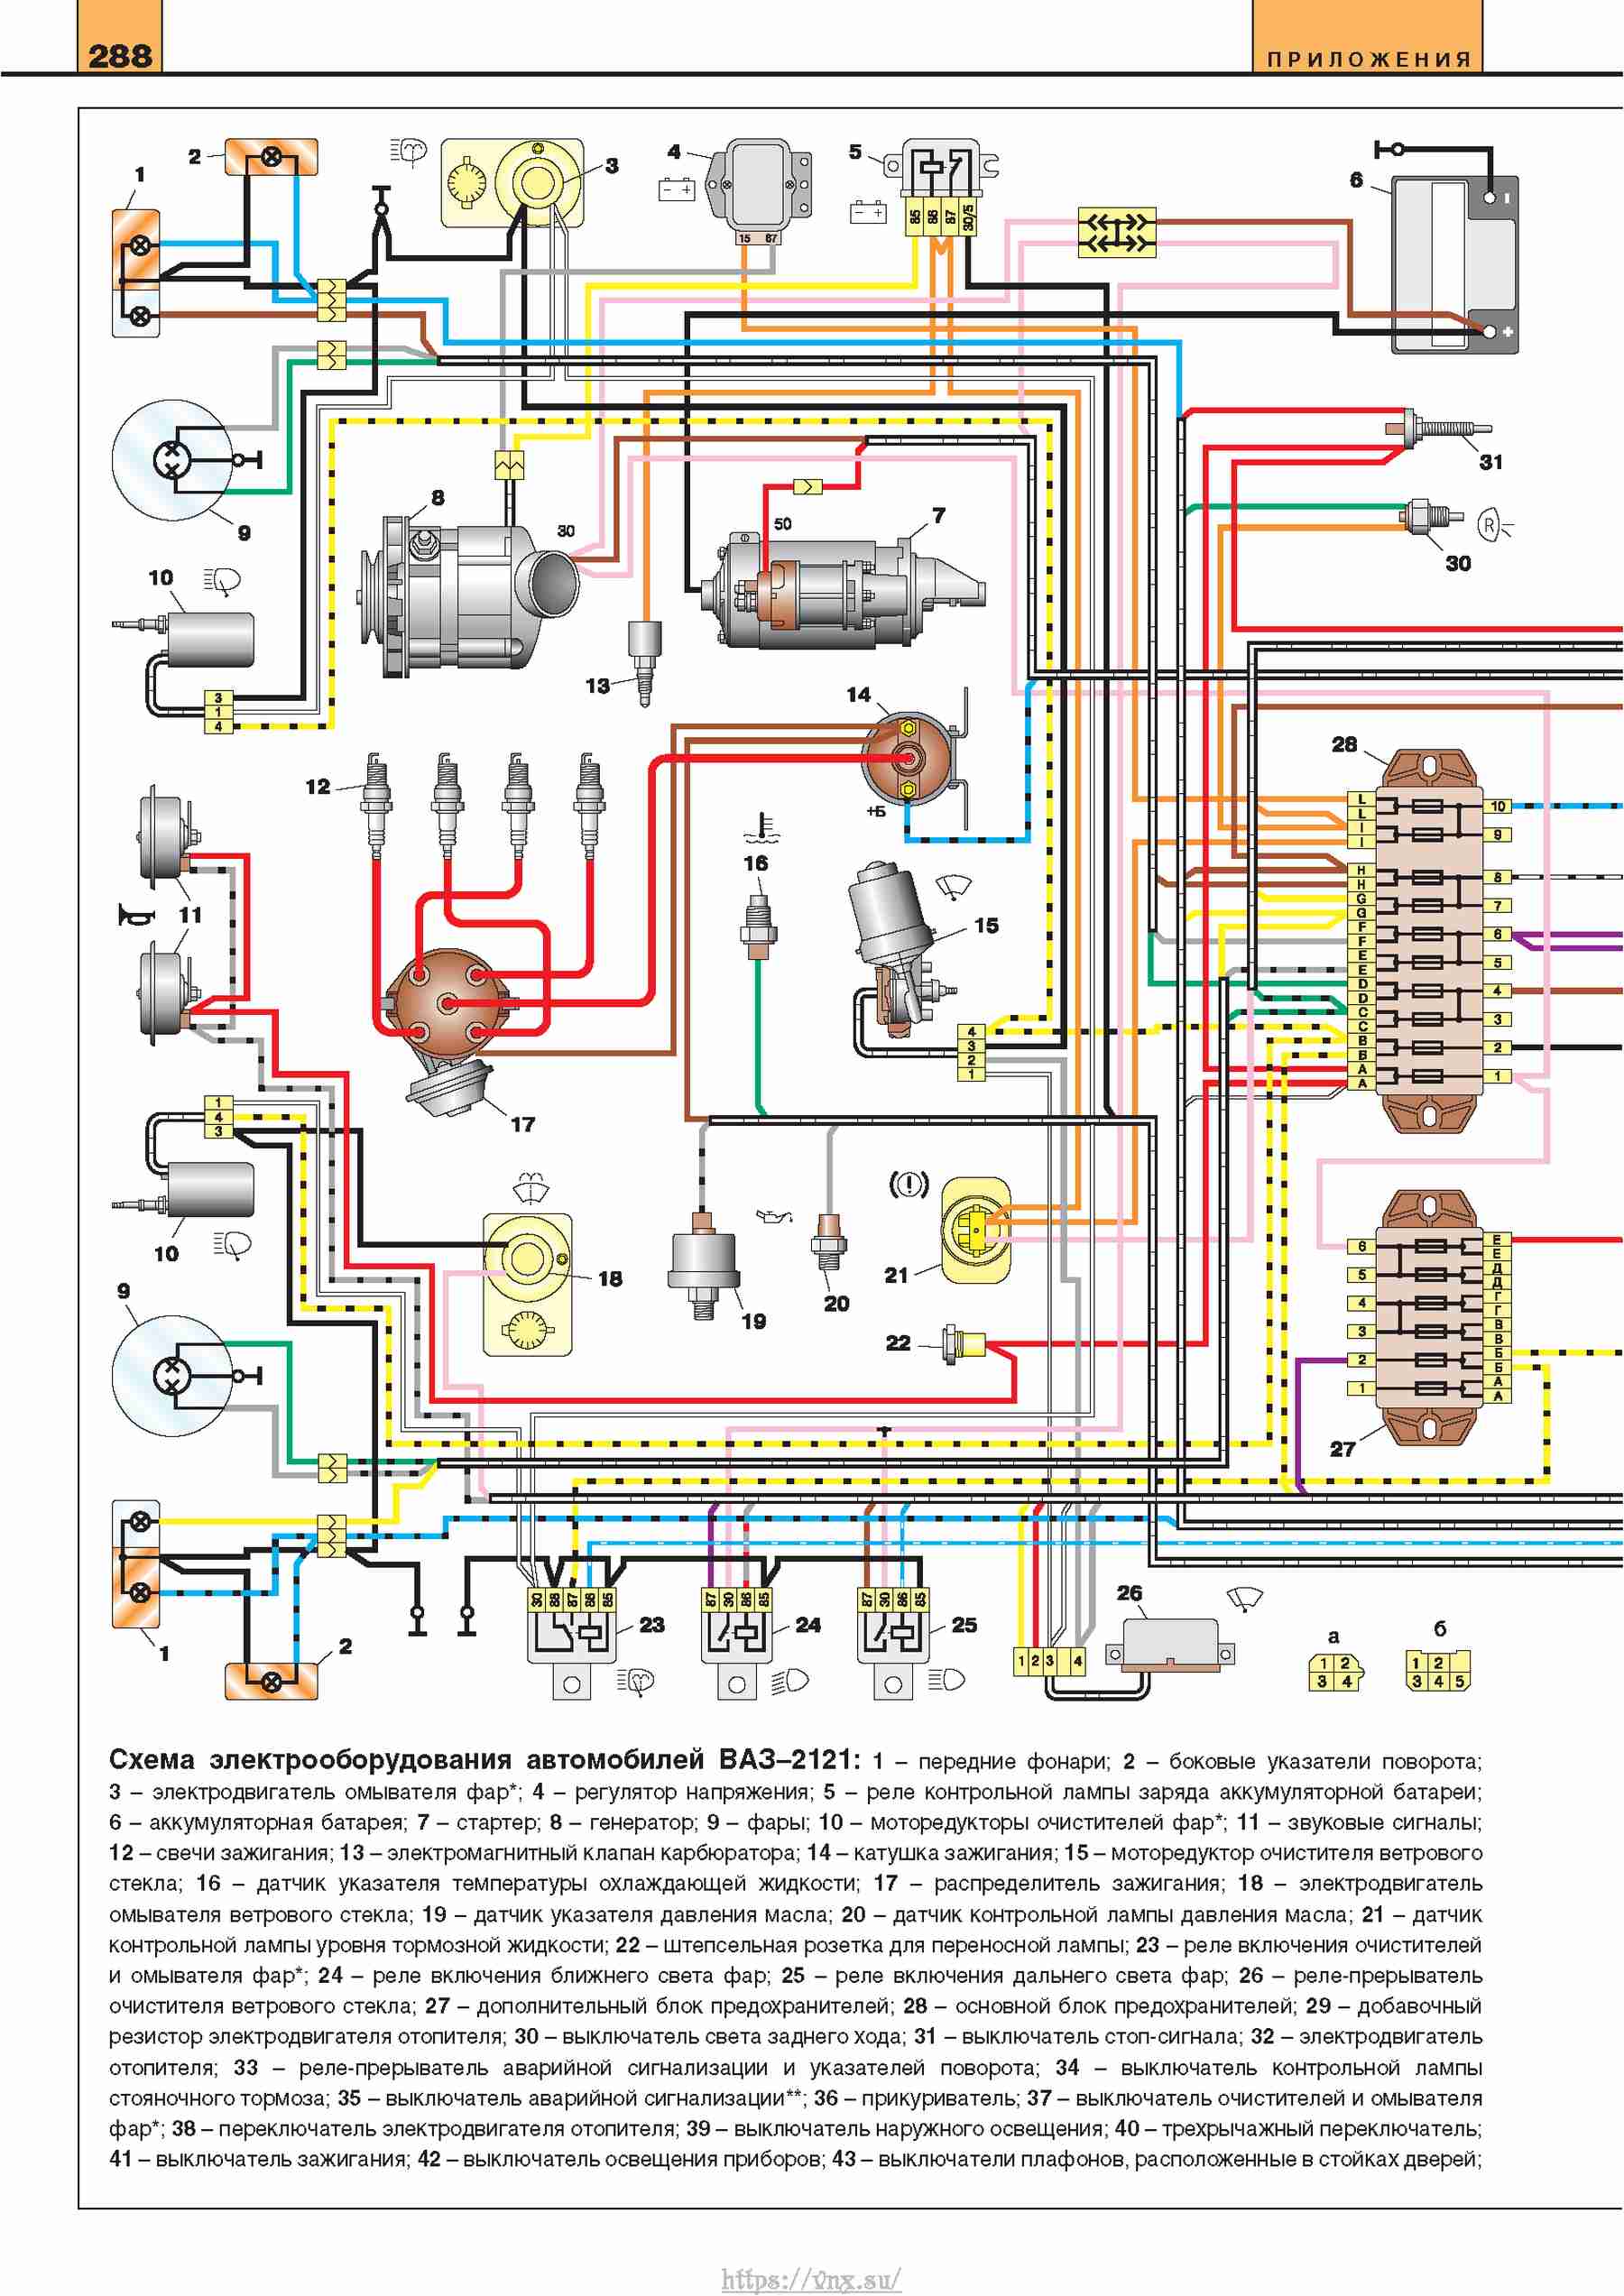 Схема электронного зажигания нива